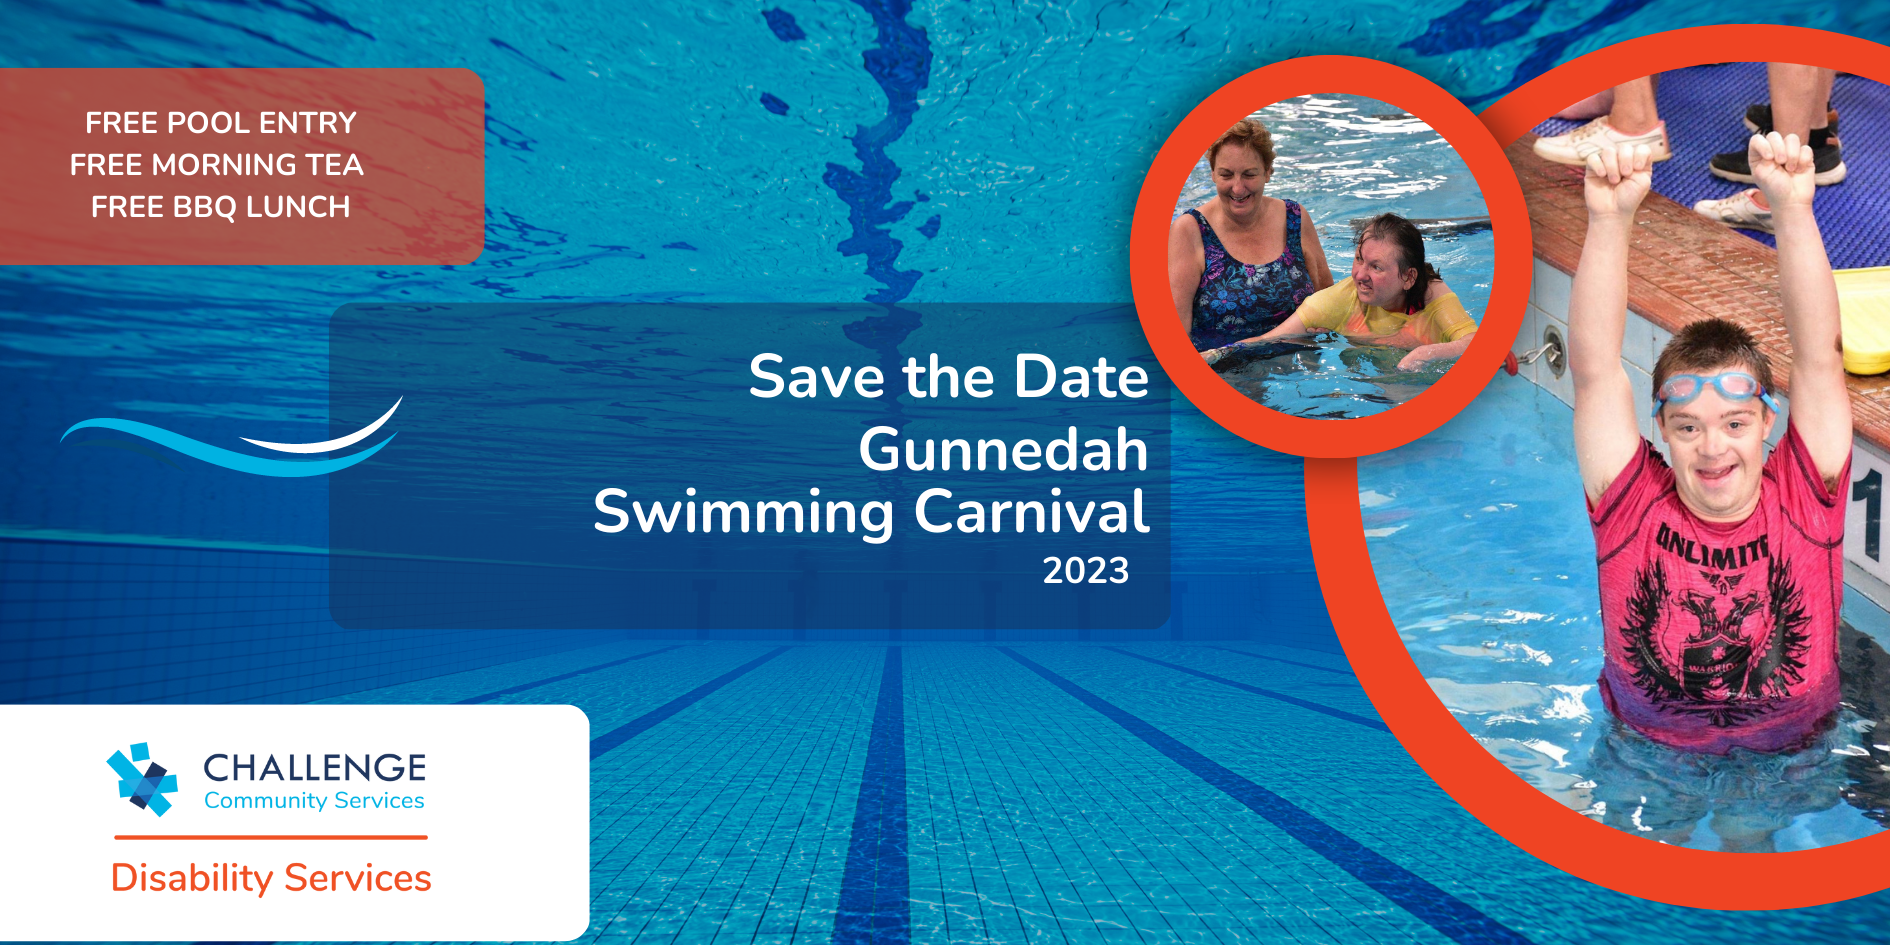 Gunnedah swimming carnival banner image